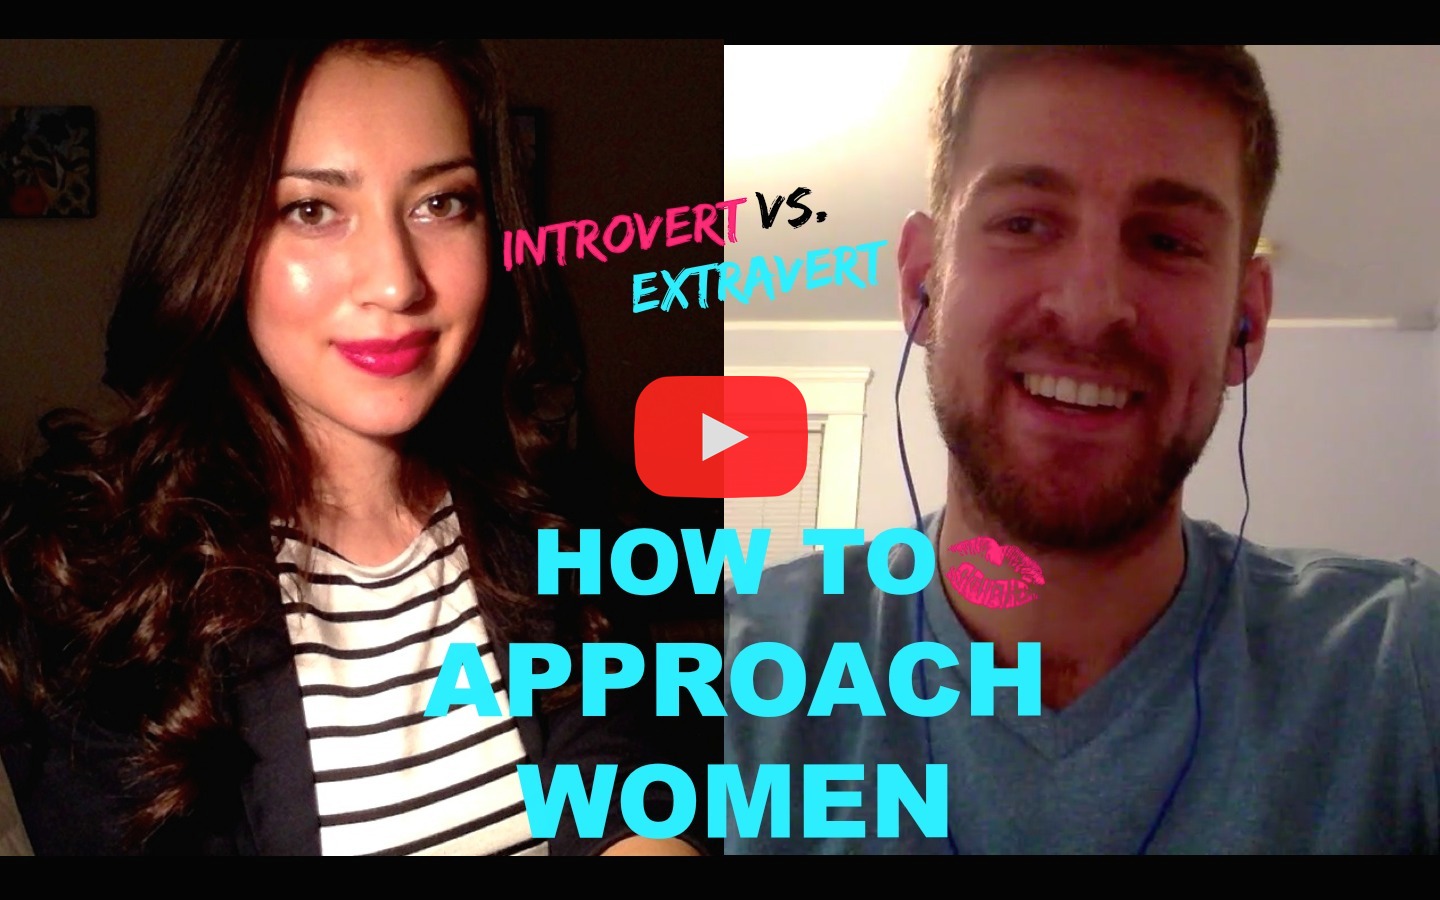 Introvert vs. Extravert: How To Approach Women